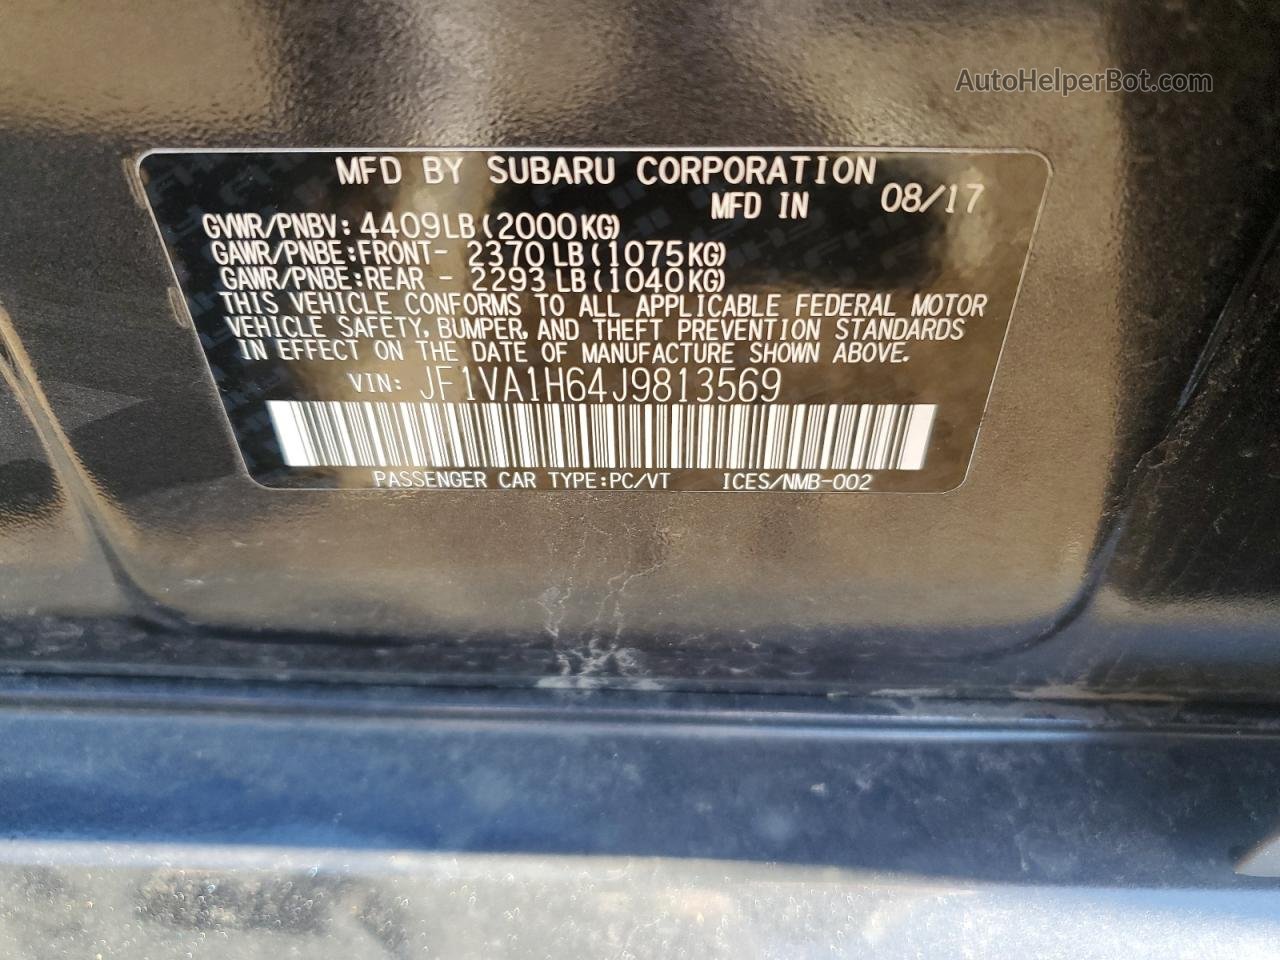 2018 Subaru Wrx Limited Угольный vin: JF1VA1H64J9813569